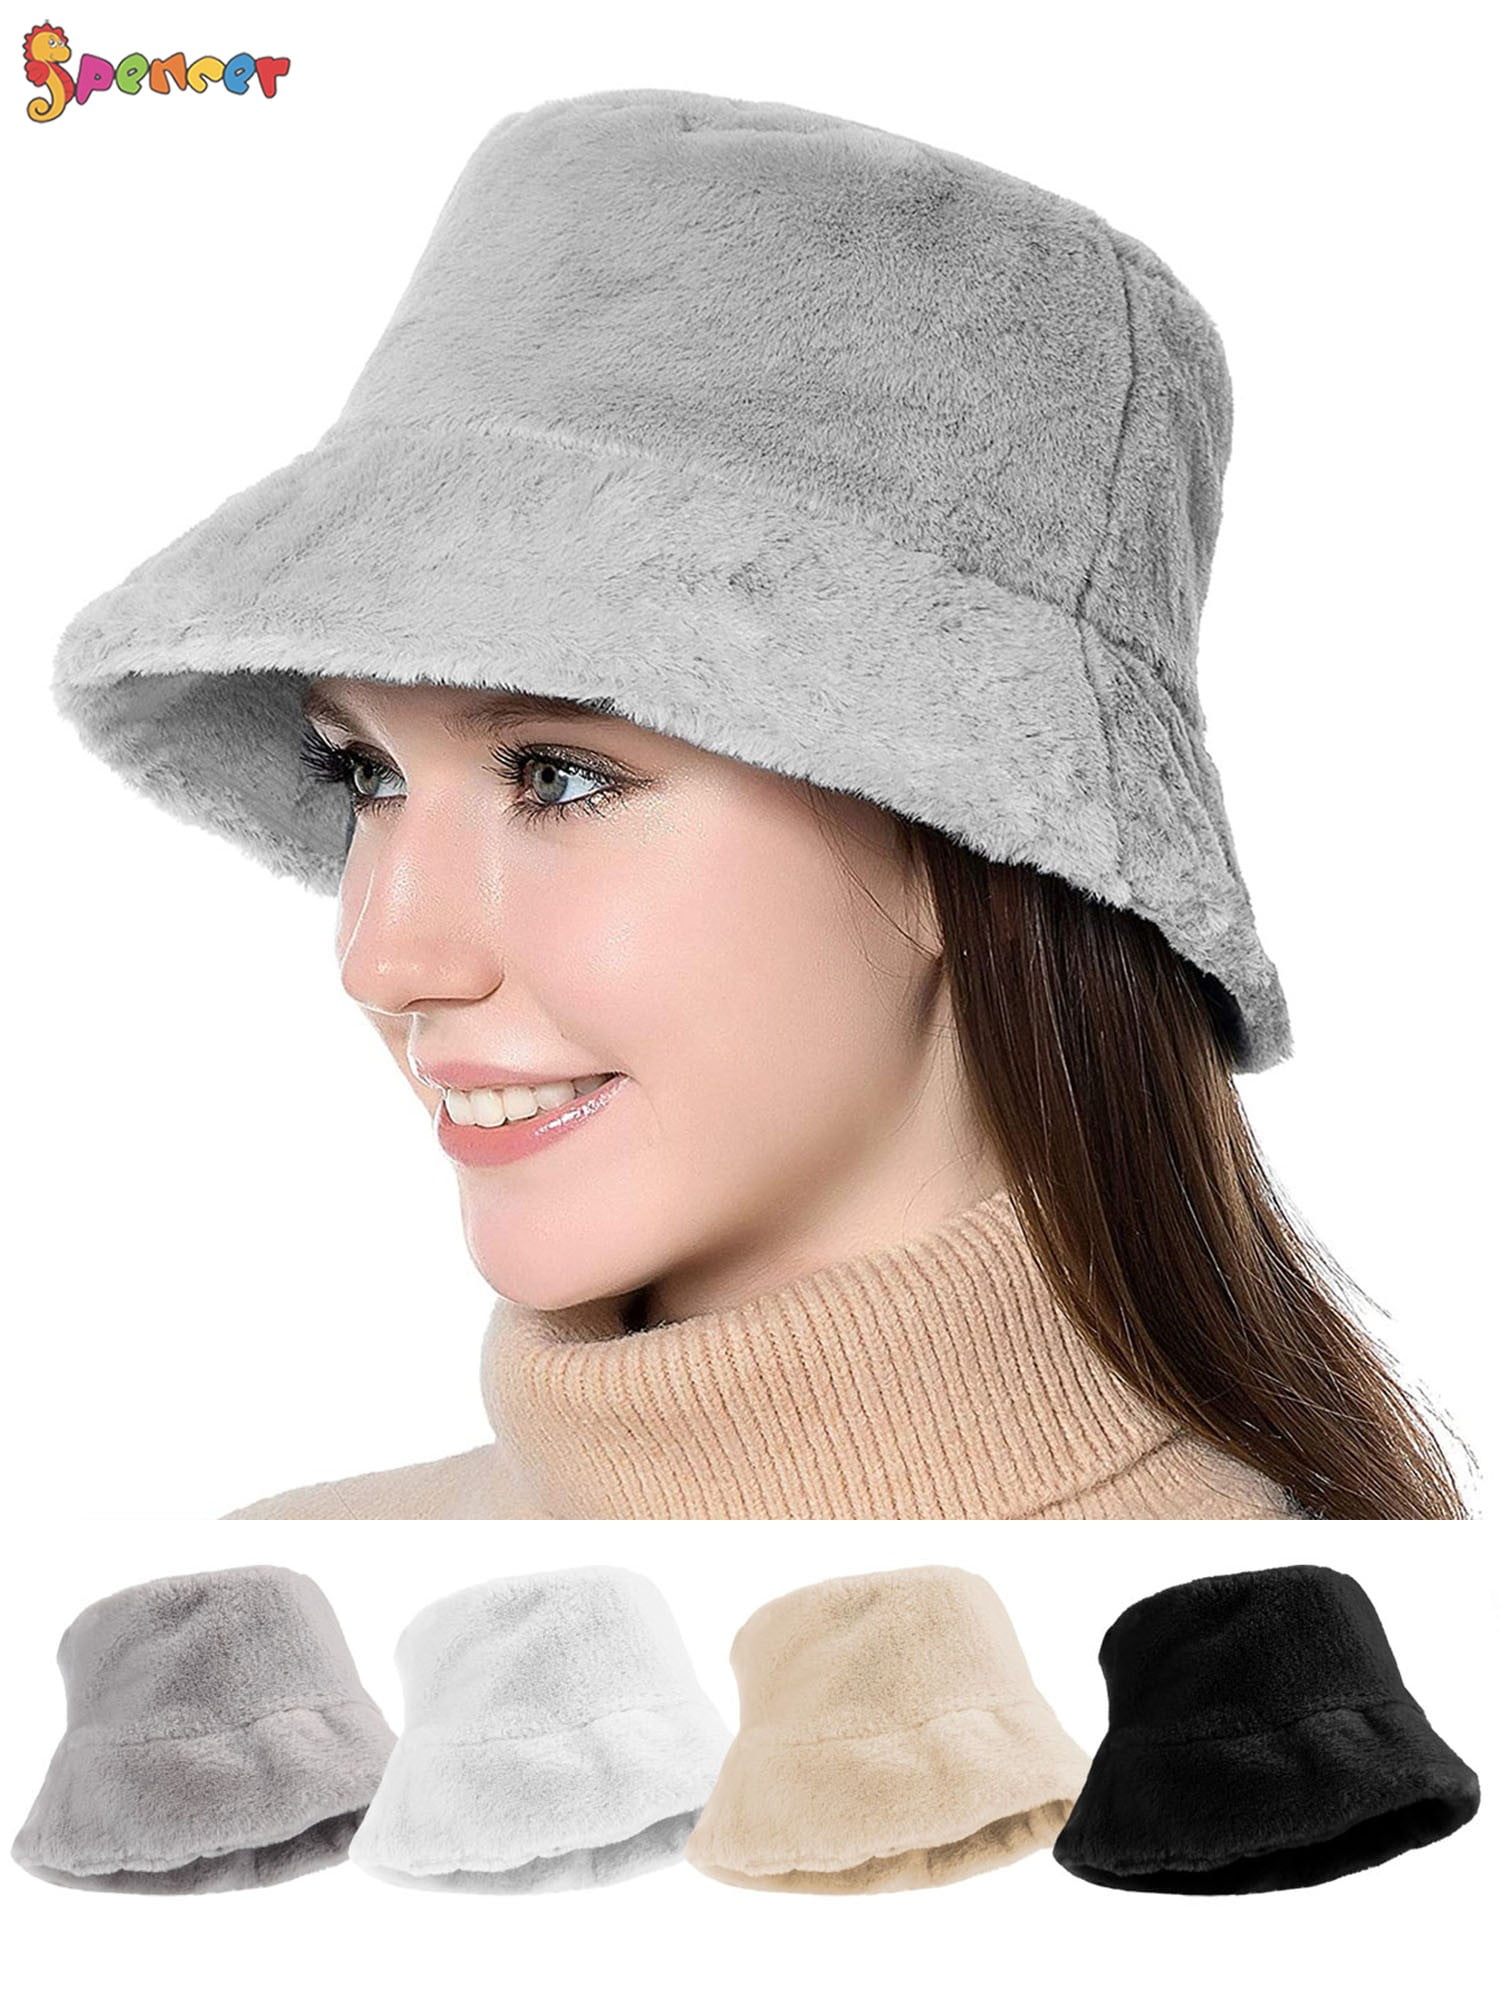 Spencer Outdoor Women's Winter Bucket Hat Foldable Vintage Faux Fur Wool  Warm Cloche Hats Fisherman Visor Cap 